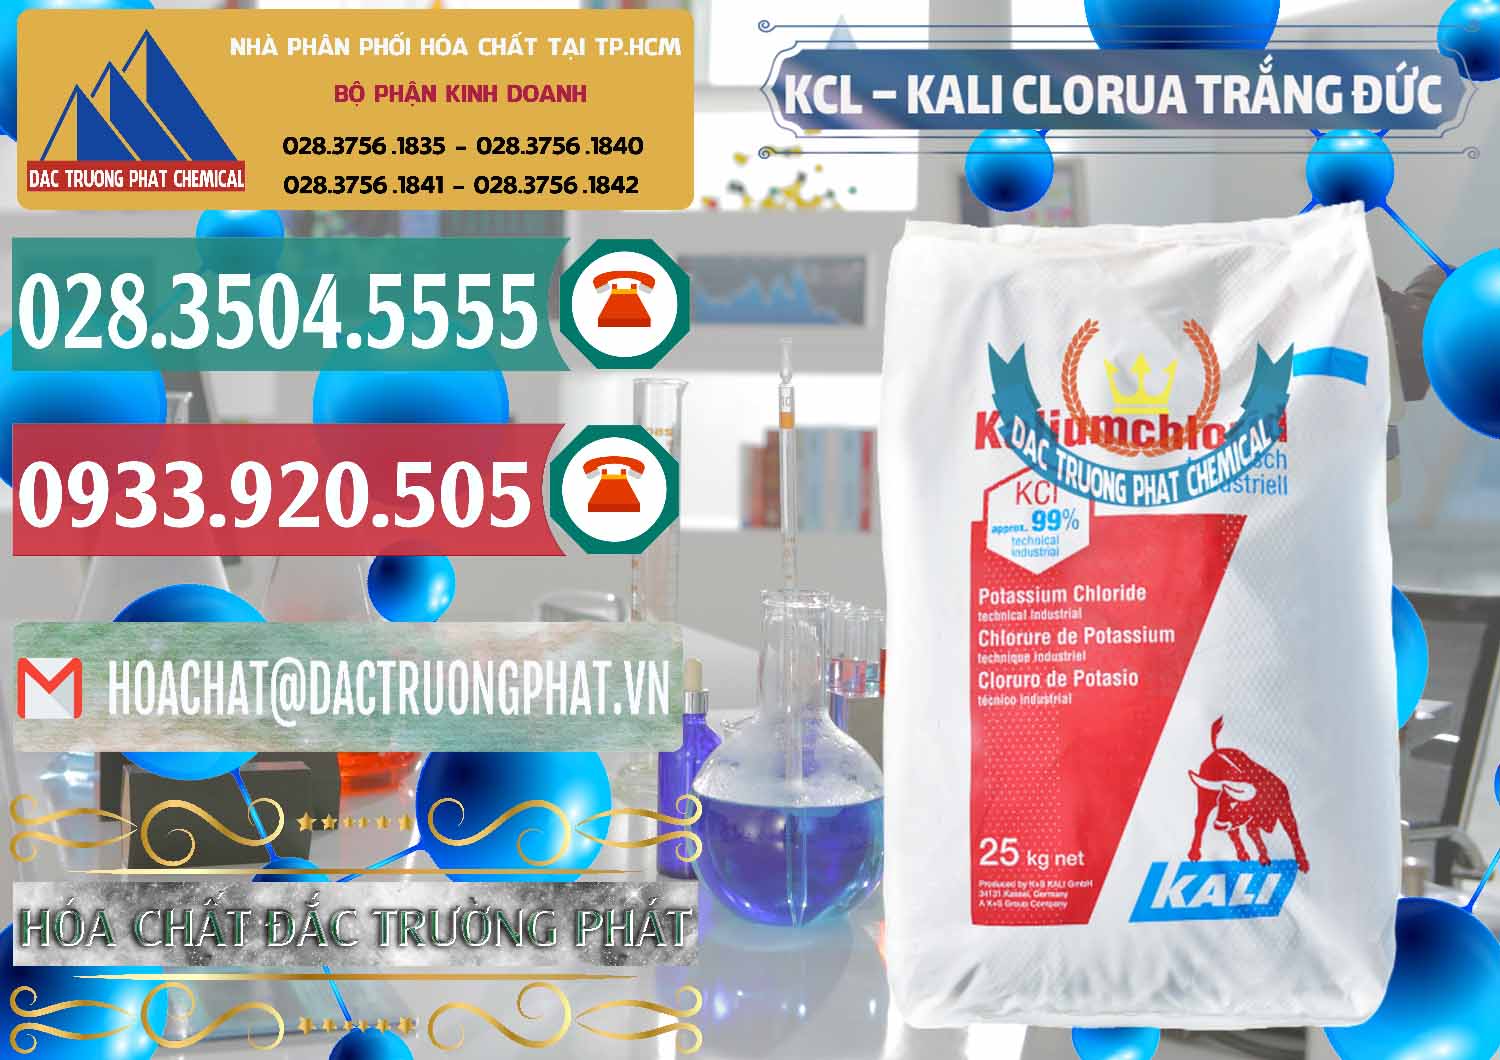 Cty chuyên kinh doanh ( bán ) KCL – Kali Clorua Trắng Đức Germany - 0086 - Nhà cung cấp _ bán hóa chất tại TP.HCM - muabanhoachat.vn